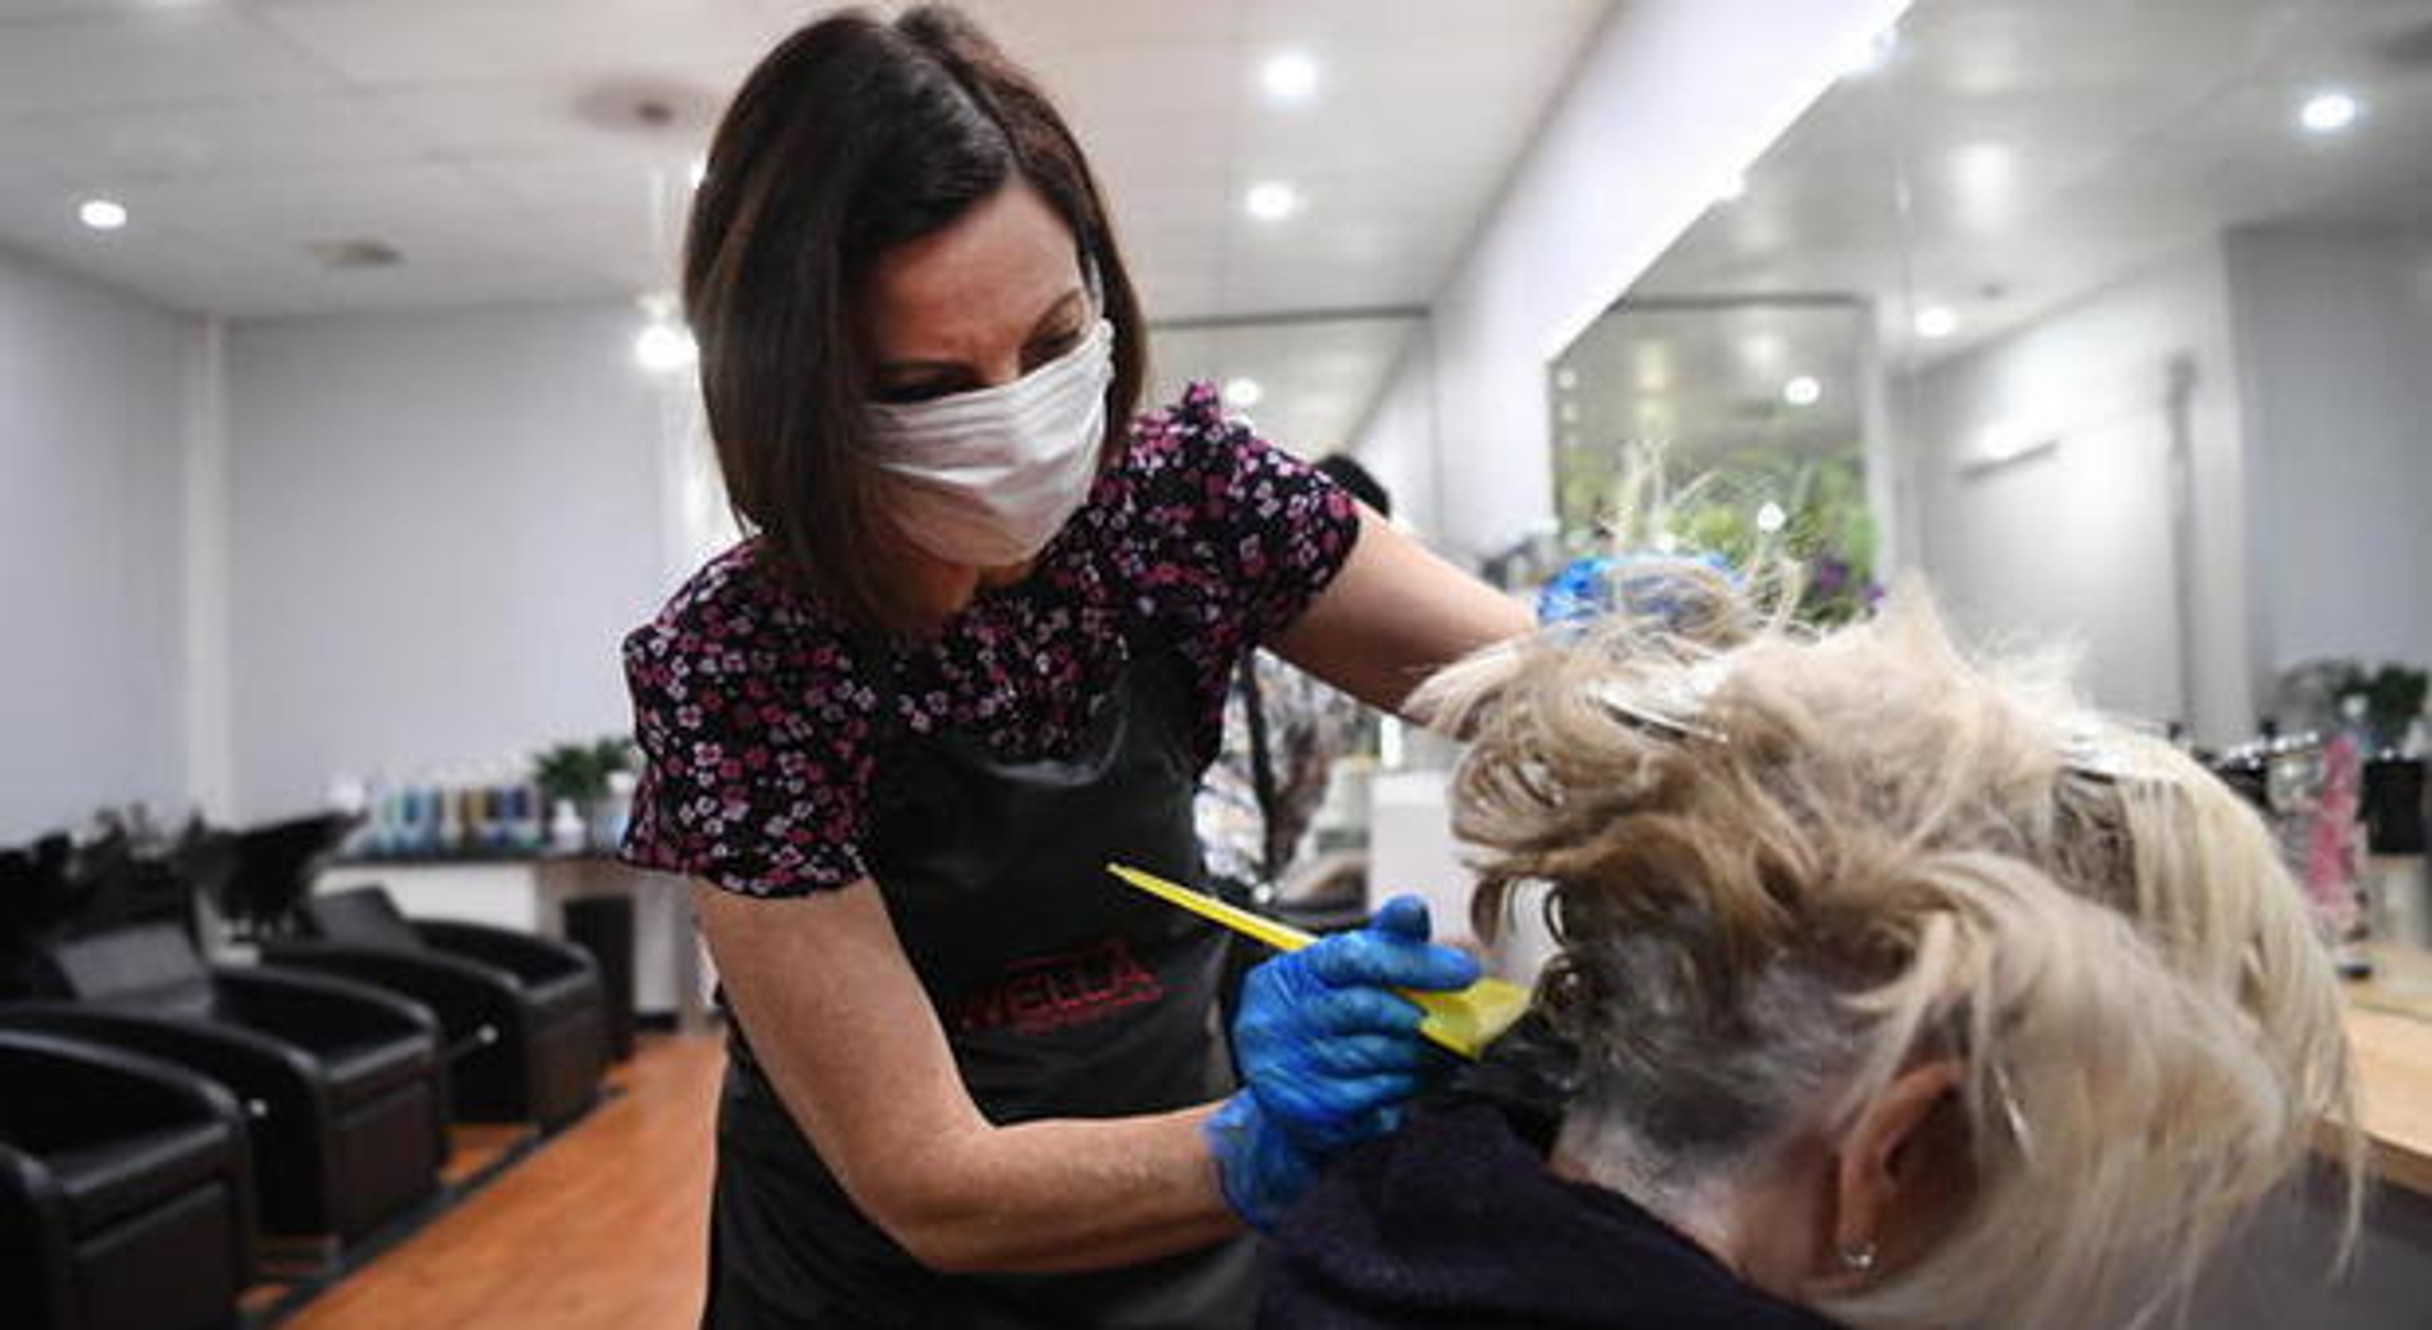 “Chiudere è una condanna a morte”: parrucchieri e centri estetici chiedono di rimanere aperti in zona rossa